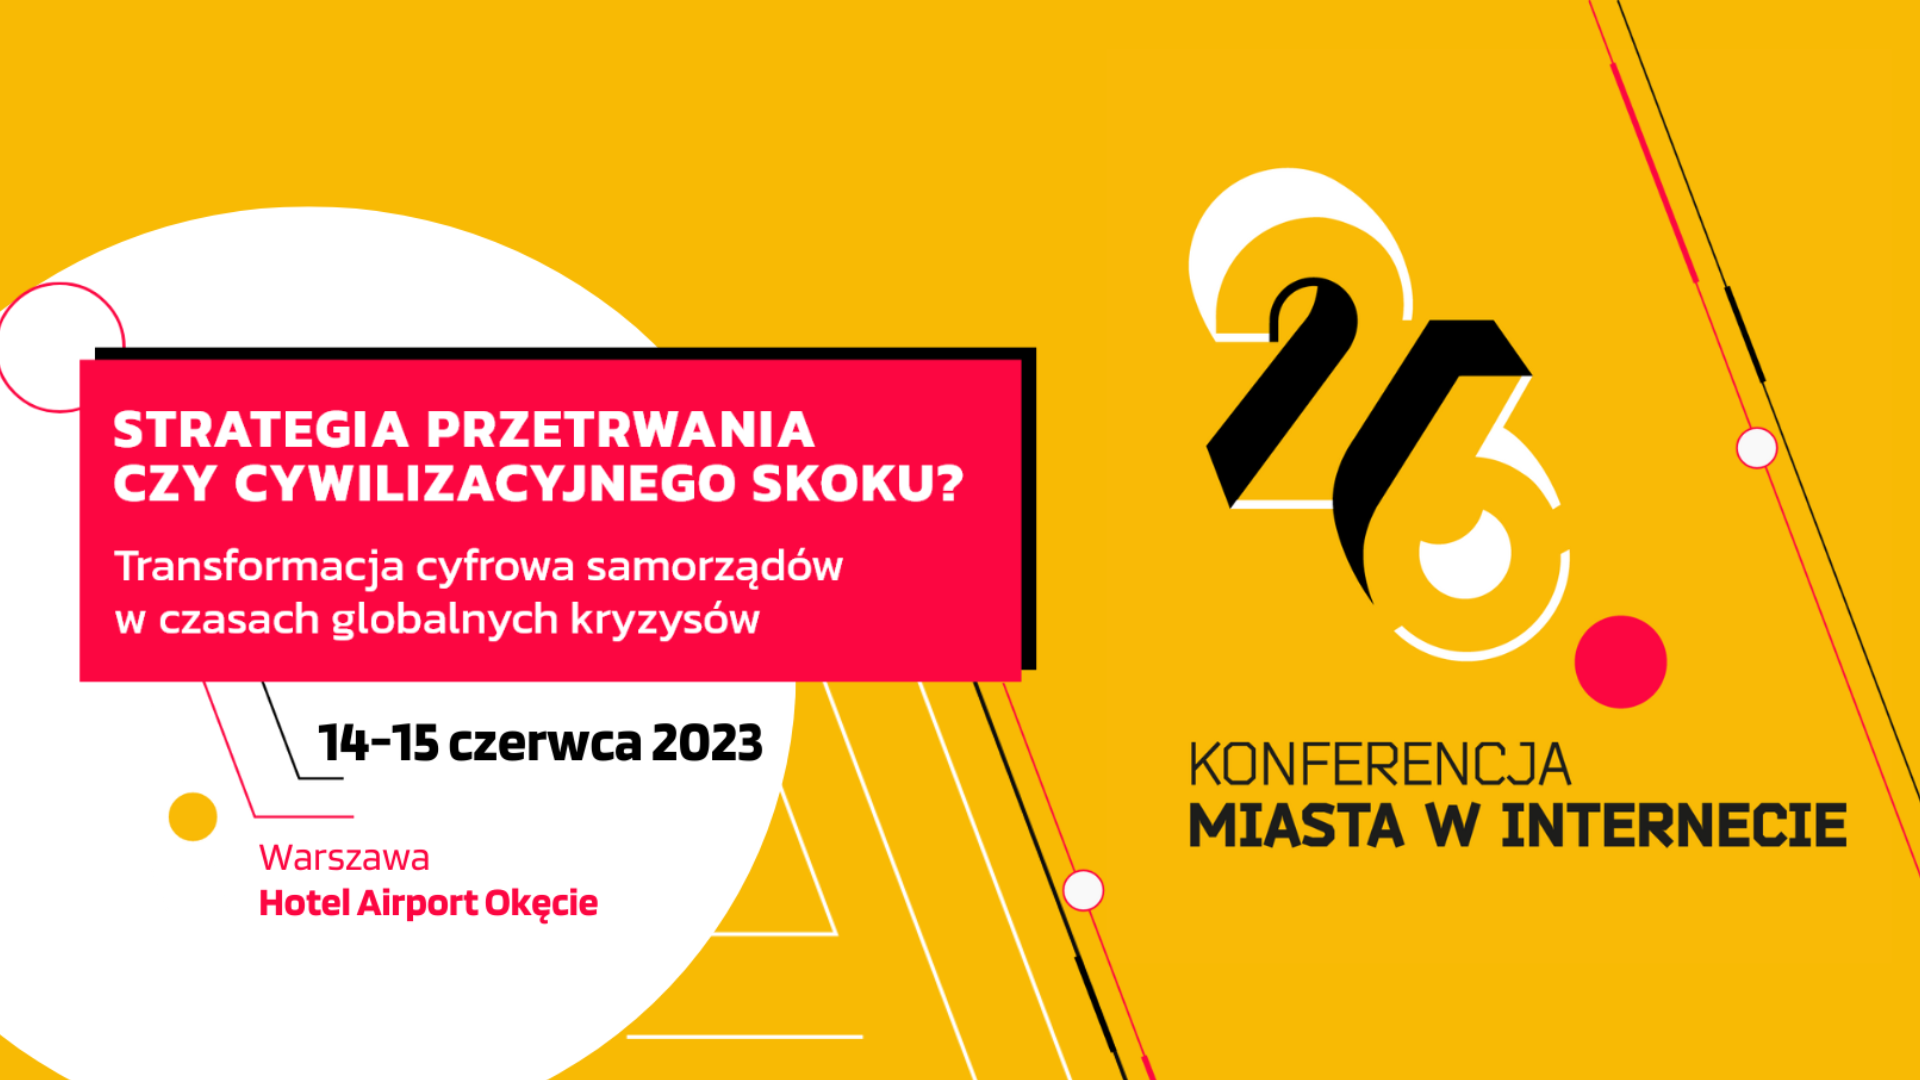 26. Konferencja „Miasta w Internecie”, 14-15 czerwca 2023 r., Warszawa